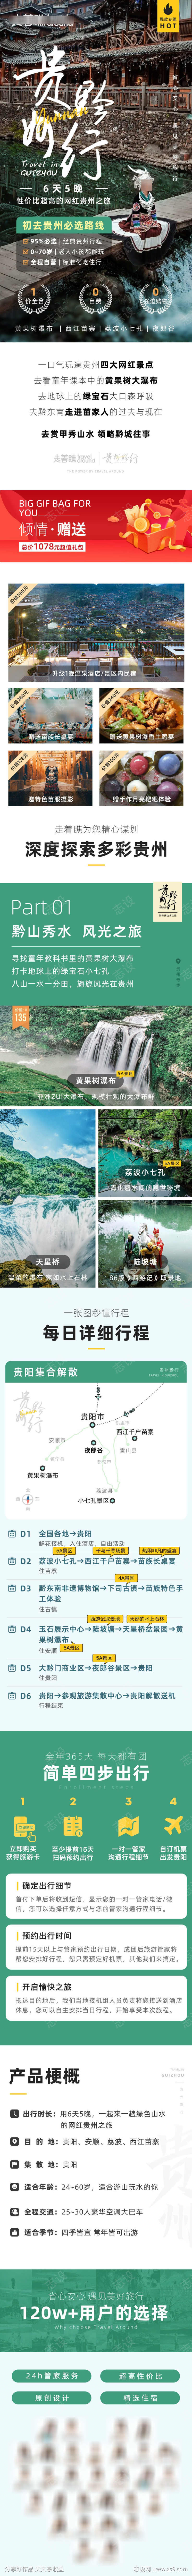 贵州黄果树瀑布小七孔旅游详情页